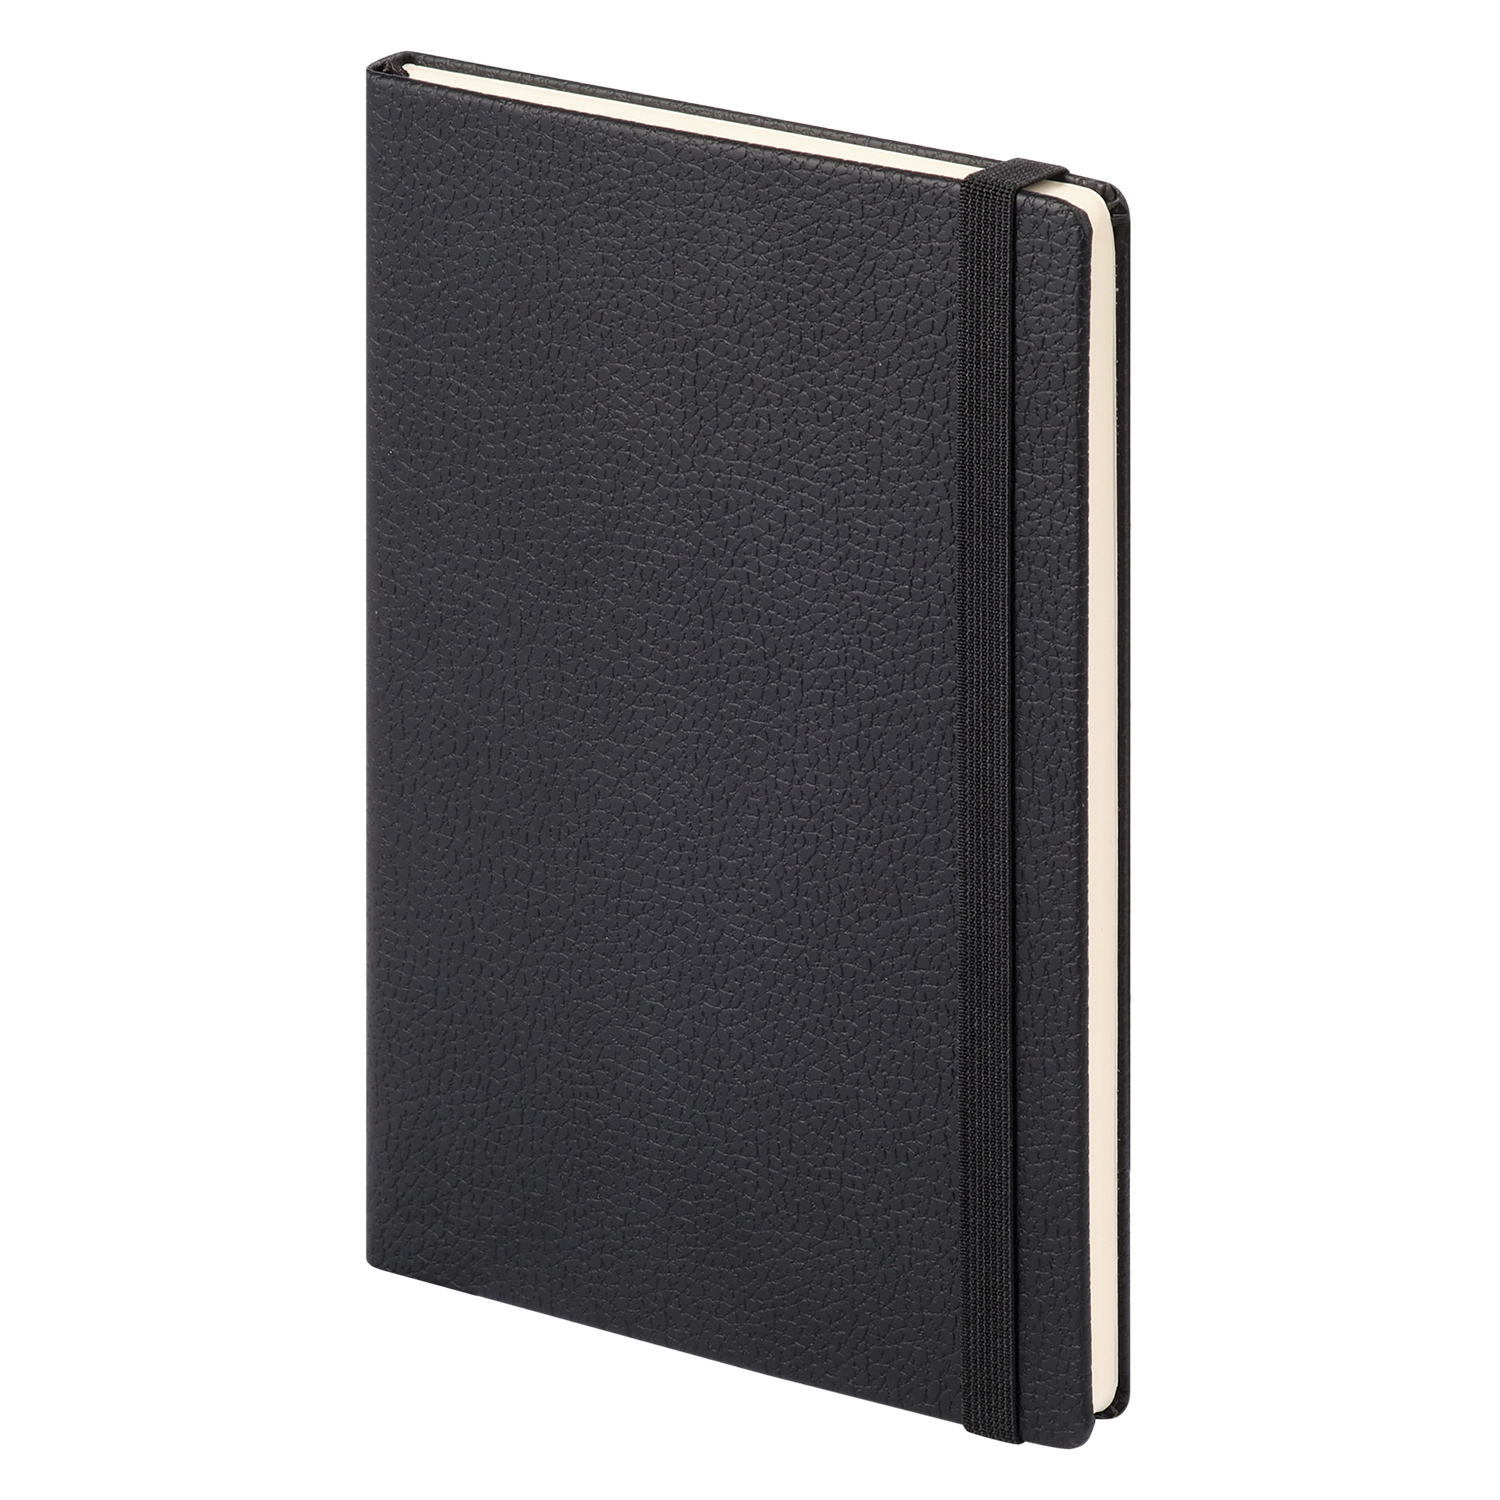 Ежедневник Dallas Btobook недатированный, черный (без упаковки, без стикера)